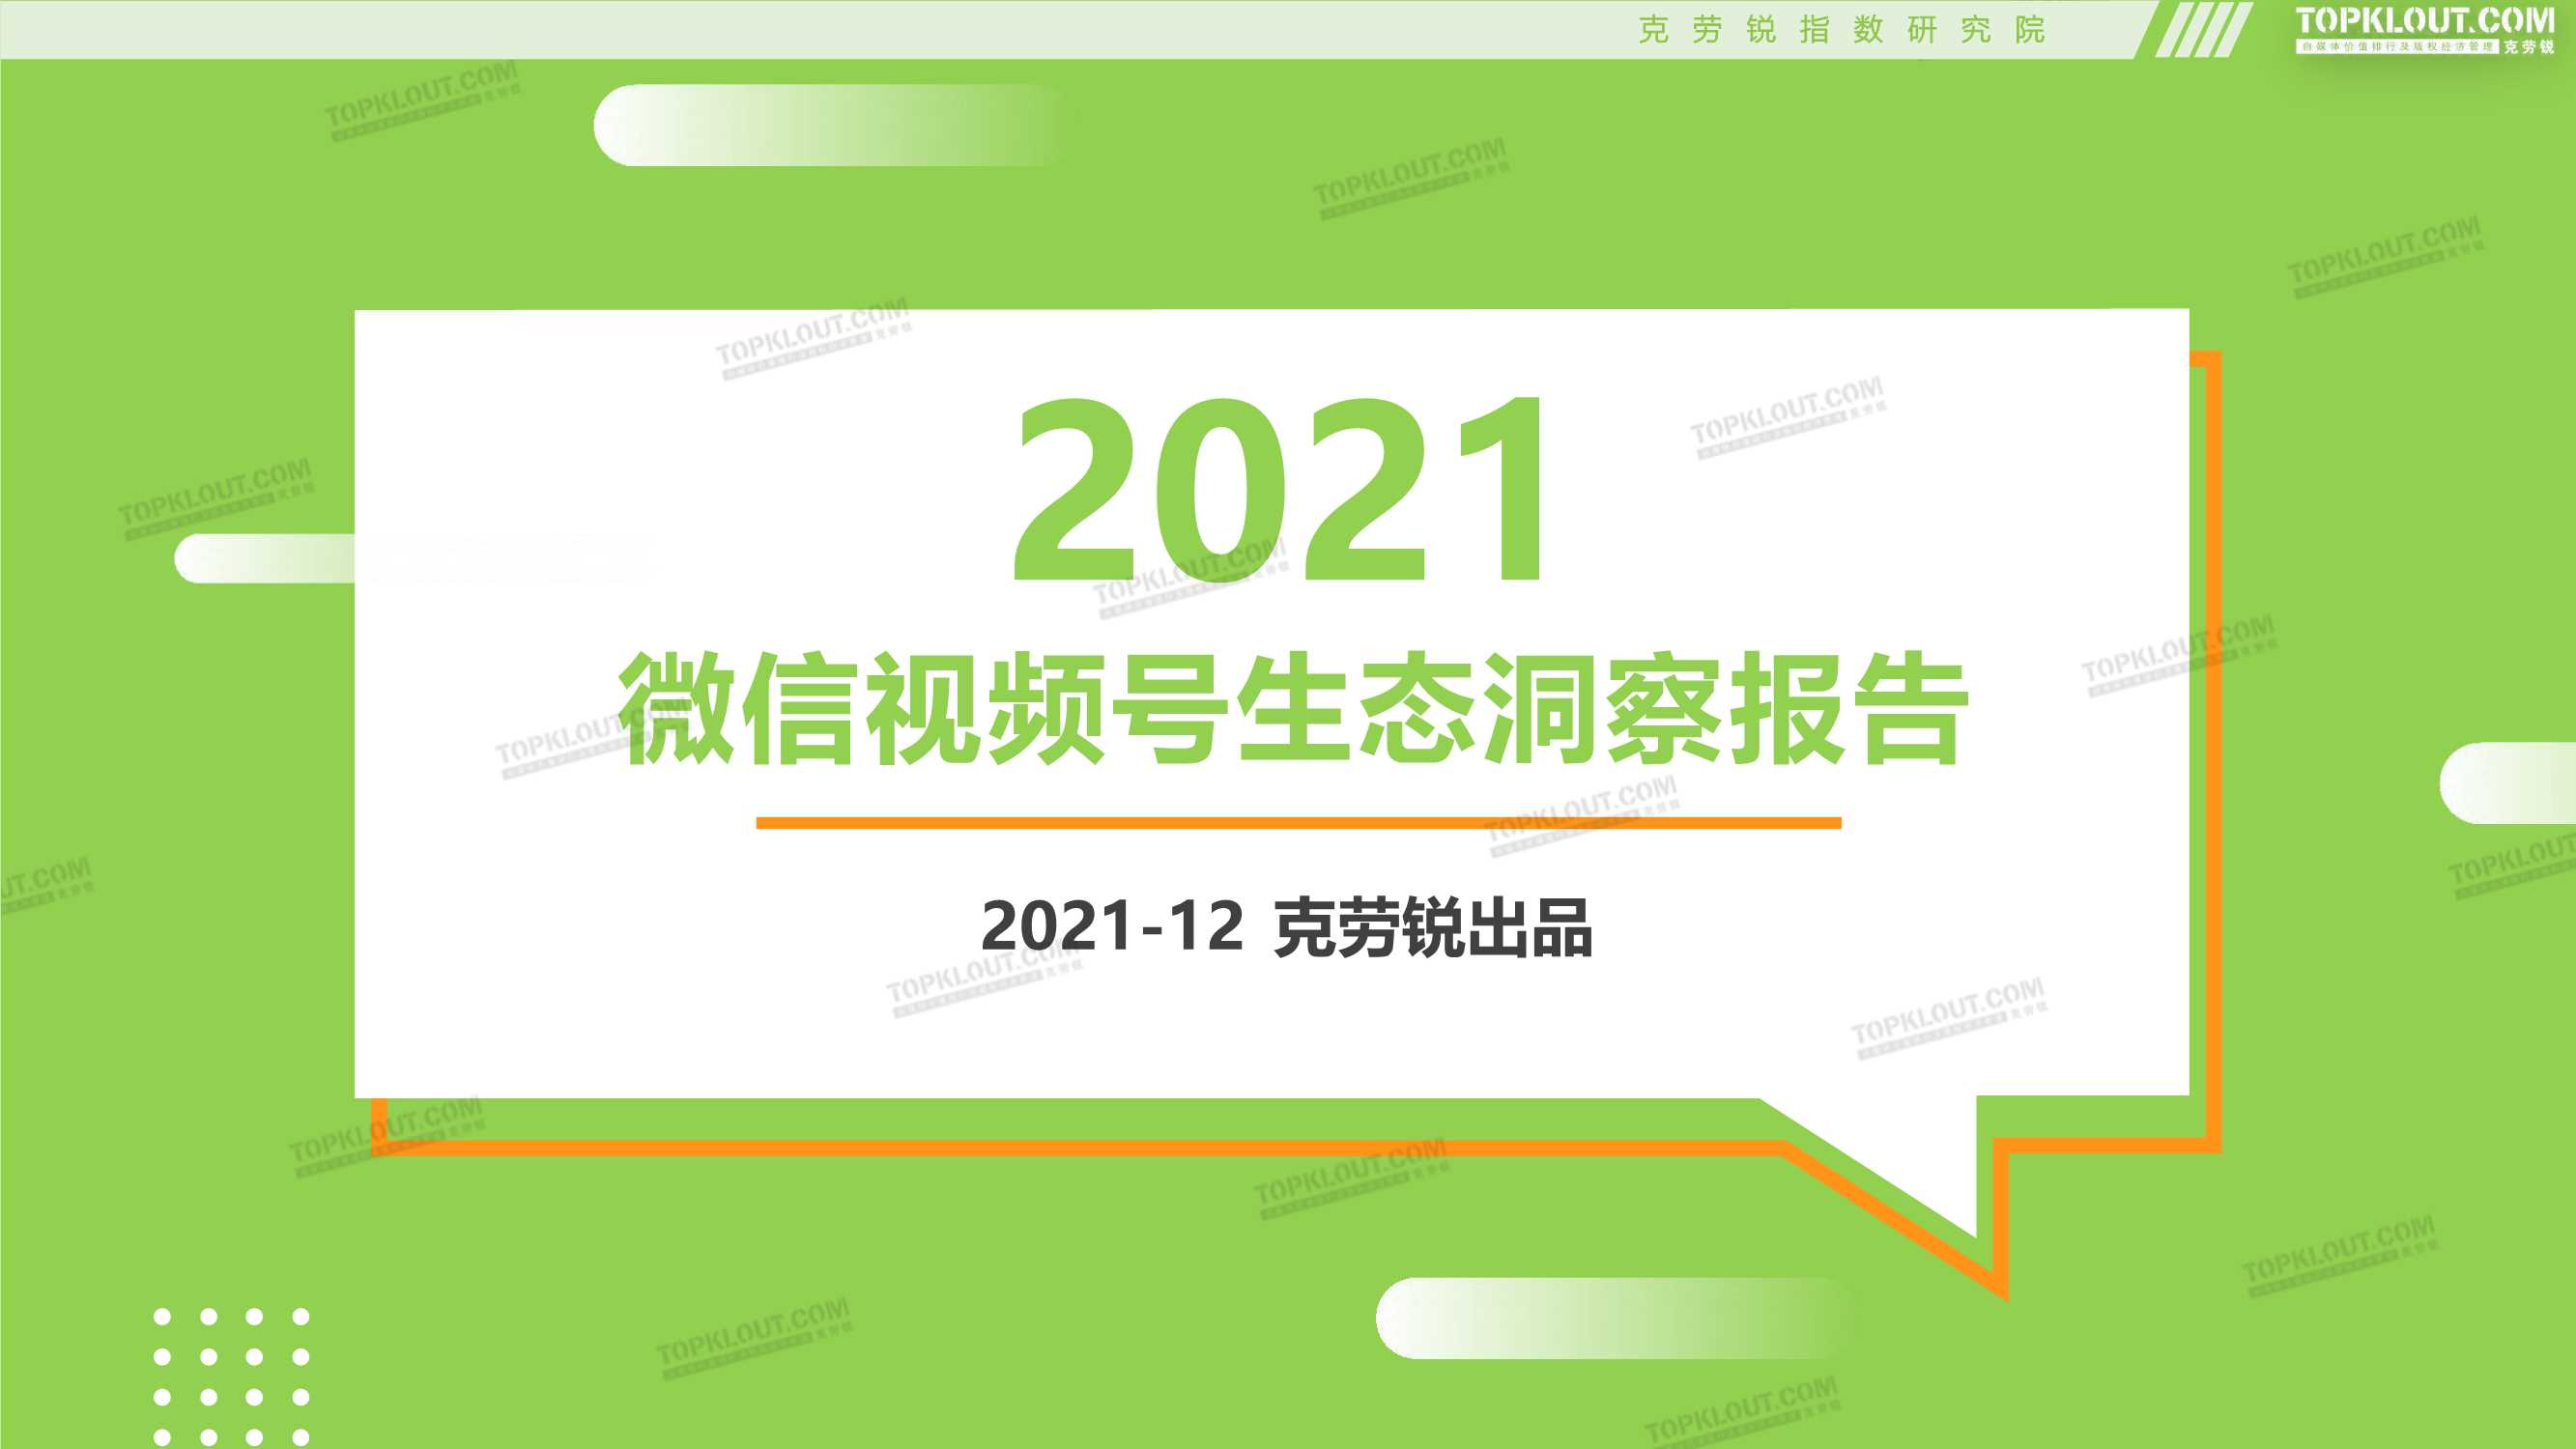 克劳锐-2021微信视频号生态洞察报告-2021.12-41页